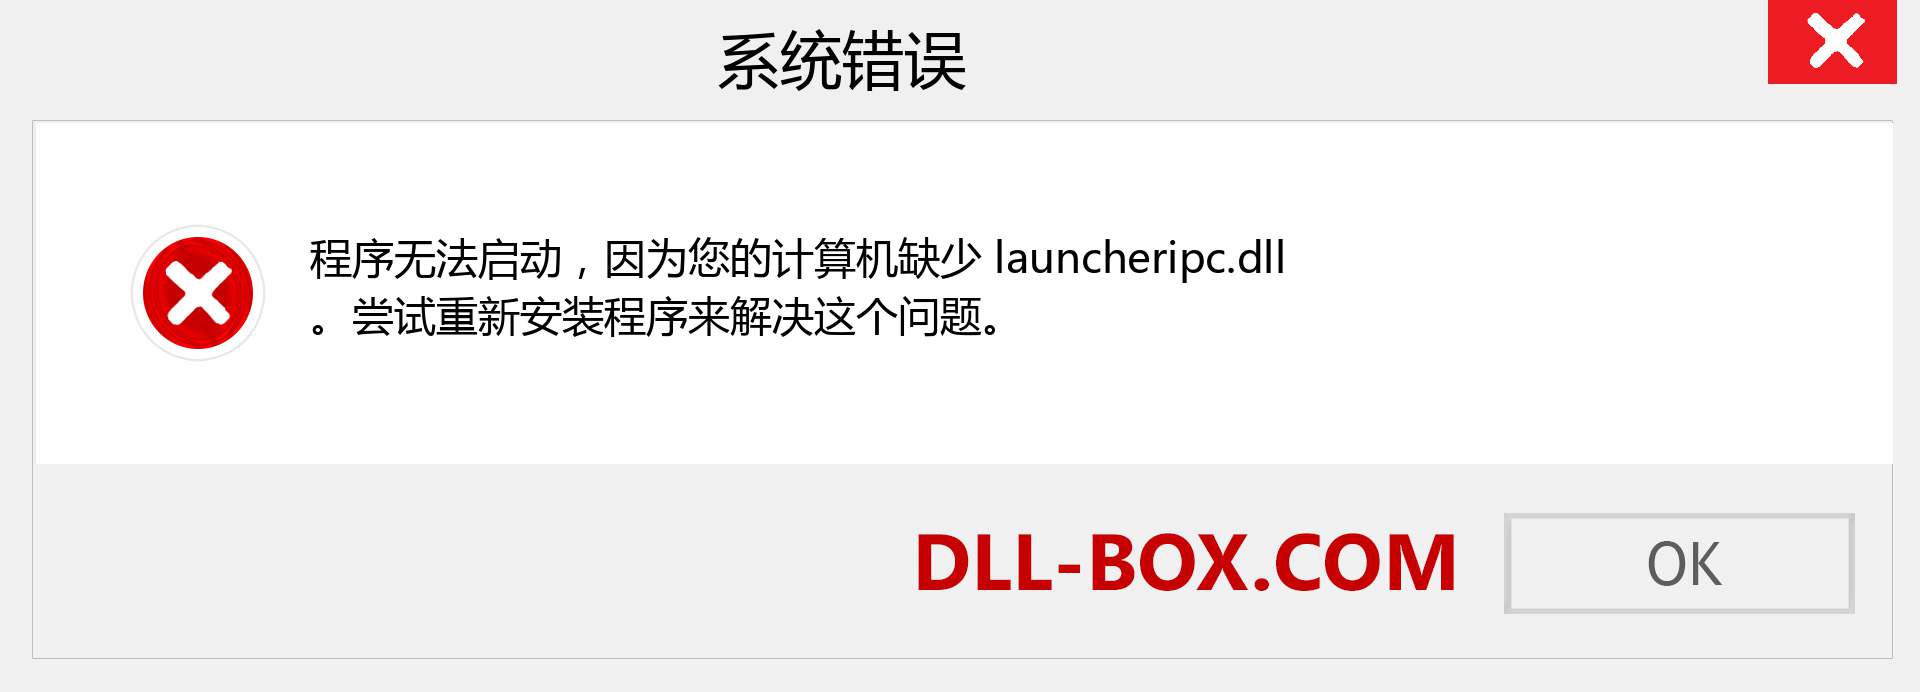 launcheripc.dll 文件丢失？。 适用于 Windows 7、8、10 的下载 - 修复 Windows、照片、图像上的 launcheripc dll 丢失错误